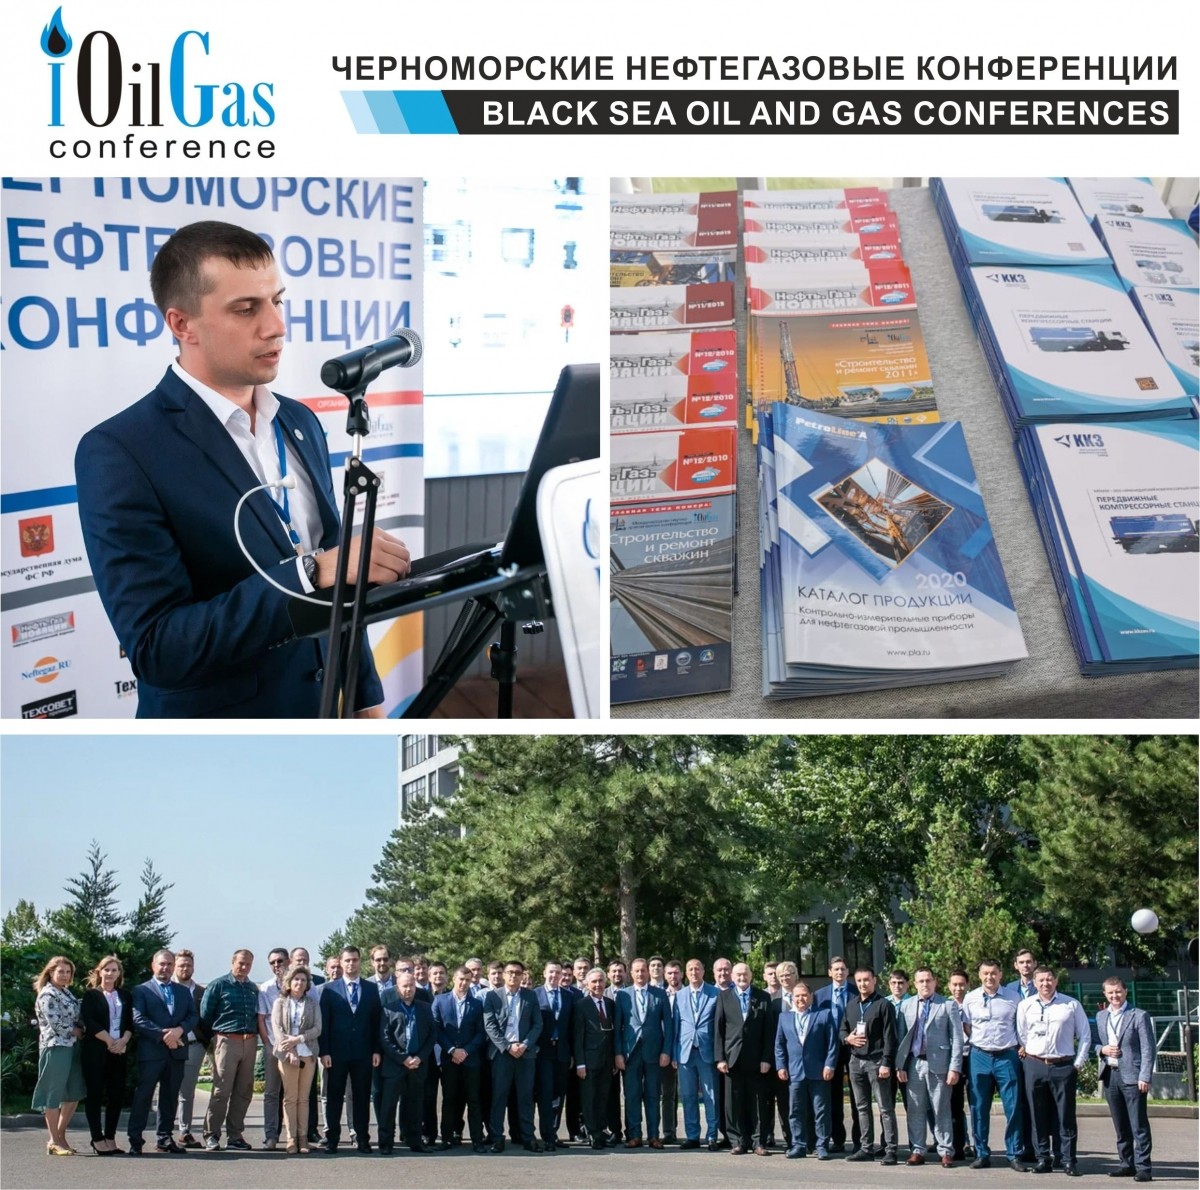 С 21-26 сентября в г. Анапа состоялась ежегодная научно-практическая Черноморская нефтегазовая конференция, в которой приняли участие ведущие специалисты нефтегазовой отрасли.